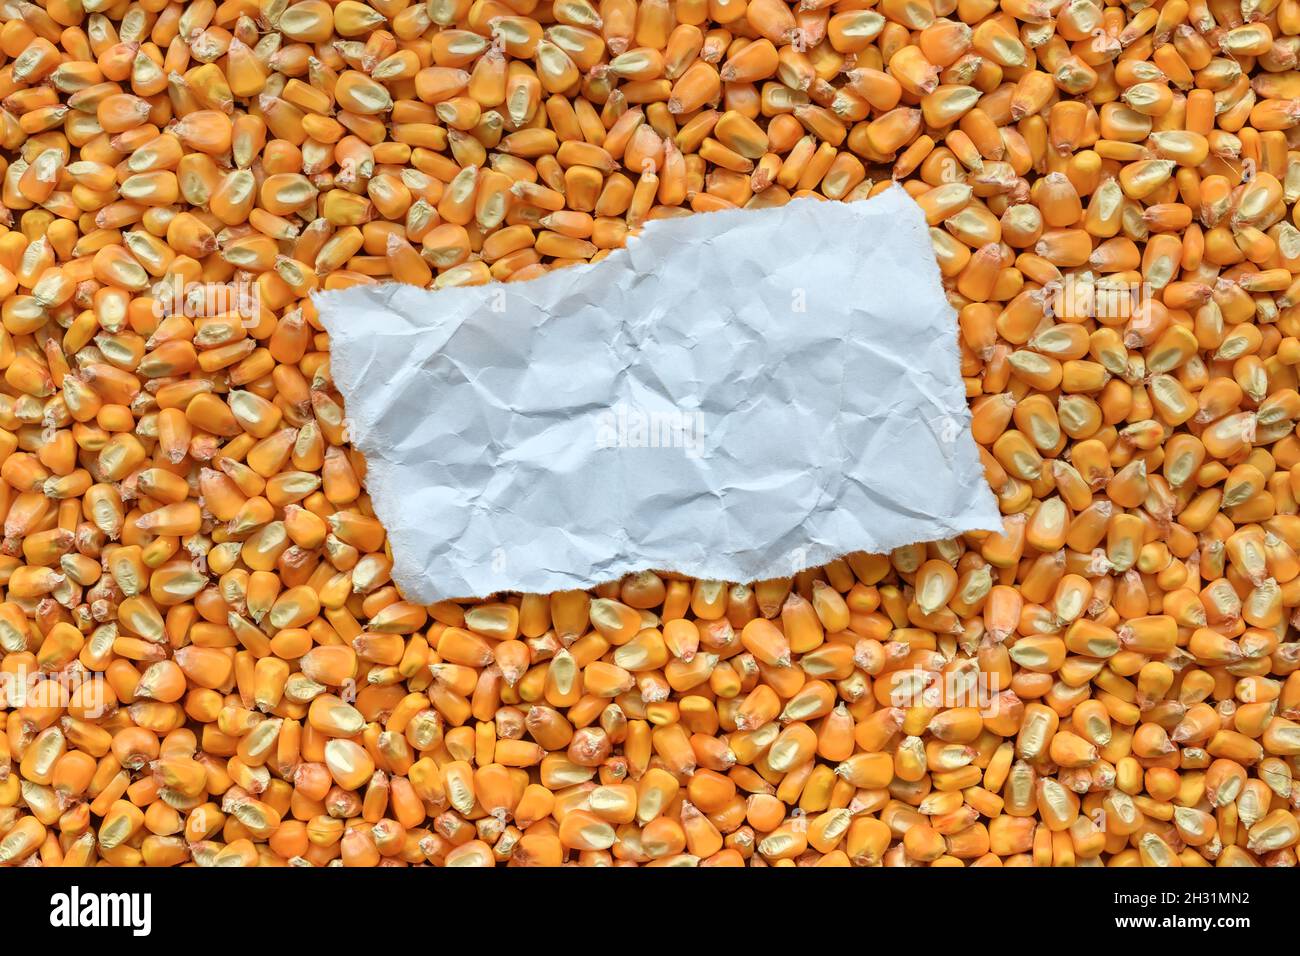 Morceau de papier froissé comme espace de copie sur le grain de maïs récolté, vue de dessus Banque D'Images